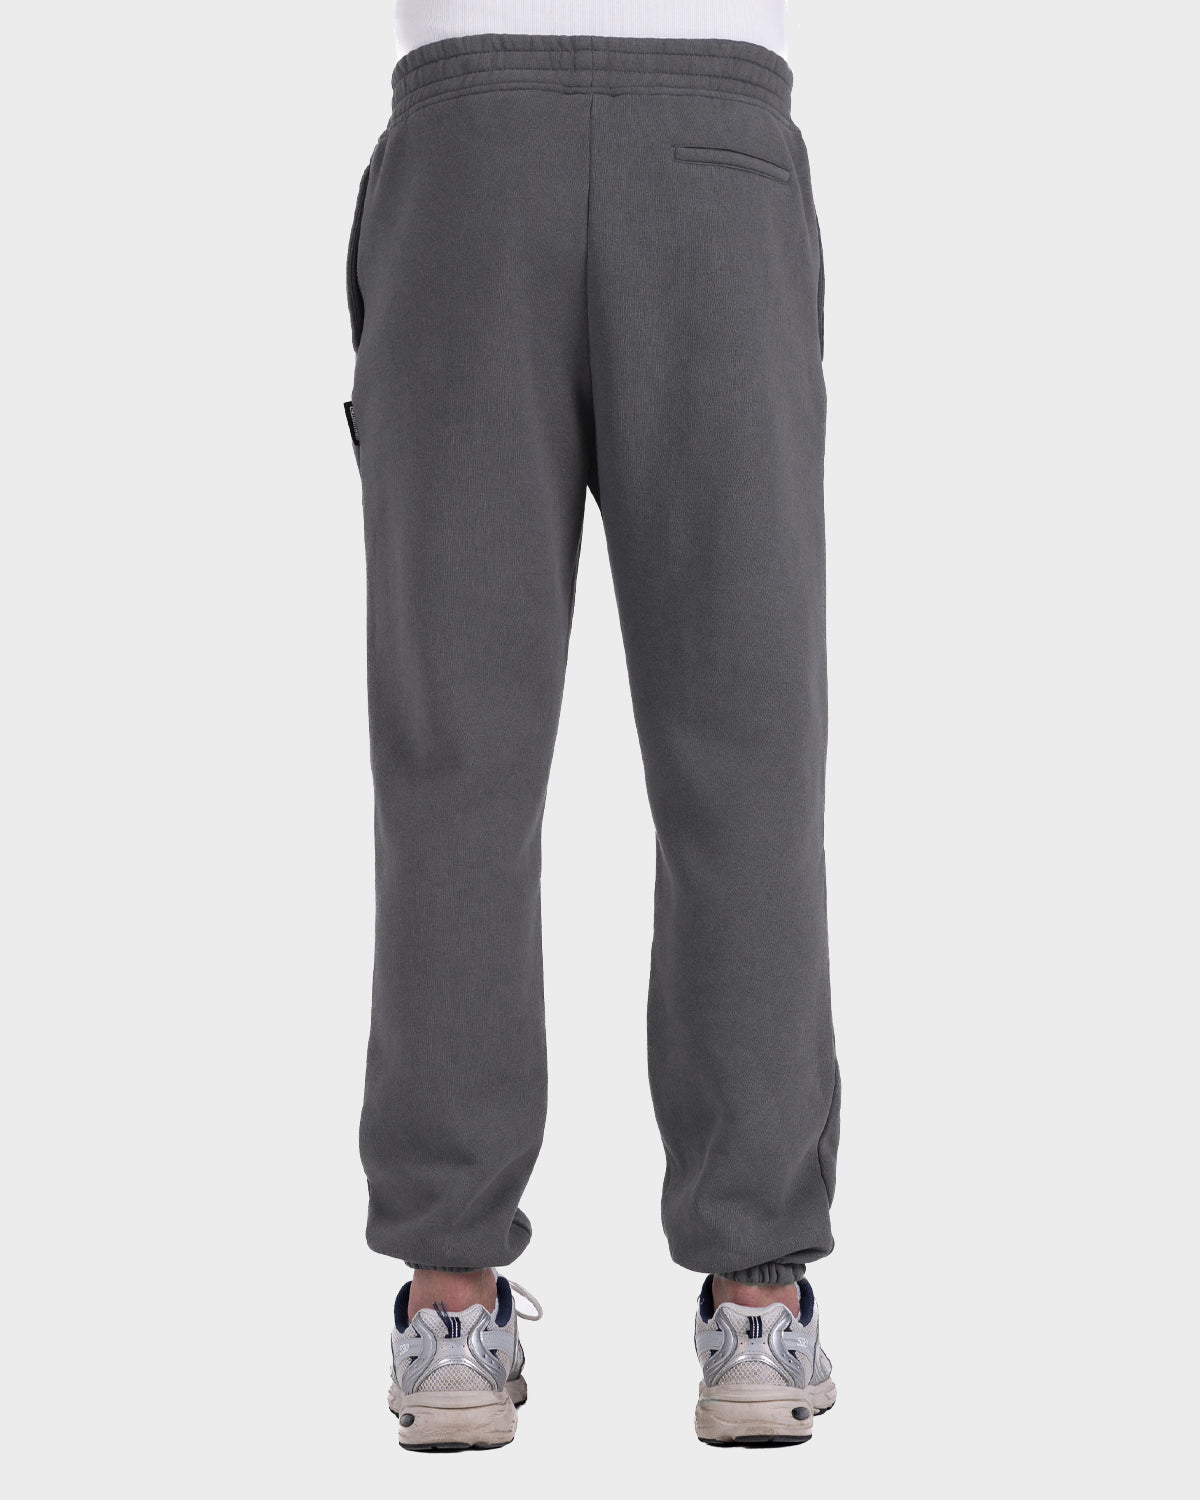 Sweatpants Grey (Stone Washed) Prohibited –